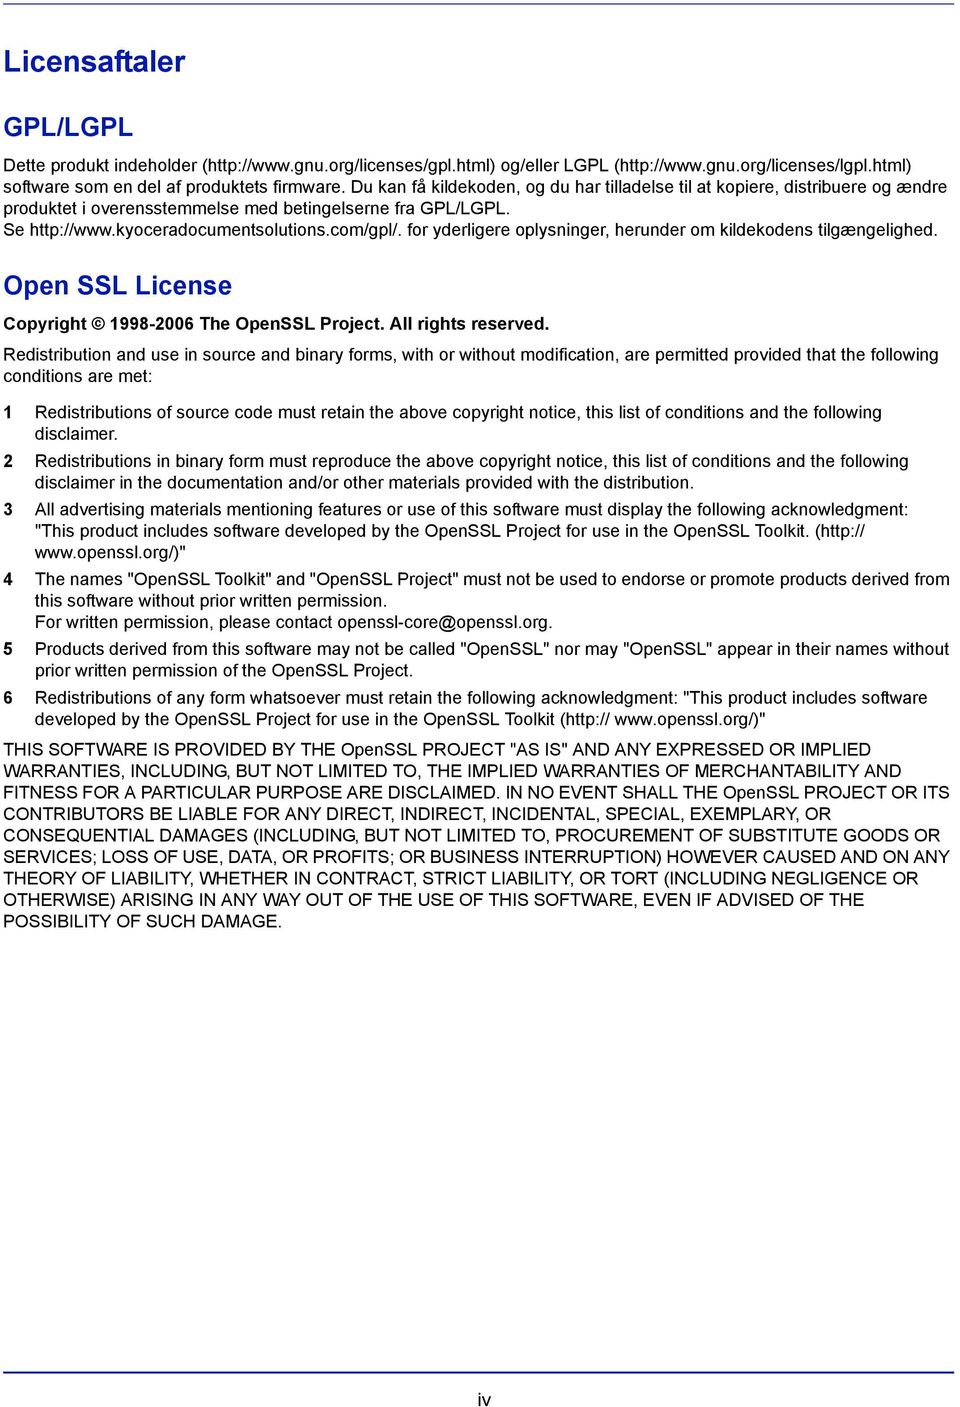 for yderligere oplysninger, herunder om kildekodens tilgængelighed. Open SSL License Copyright 1998-2006 The OpenSSL Project. All rights reserved.